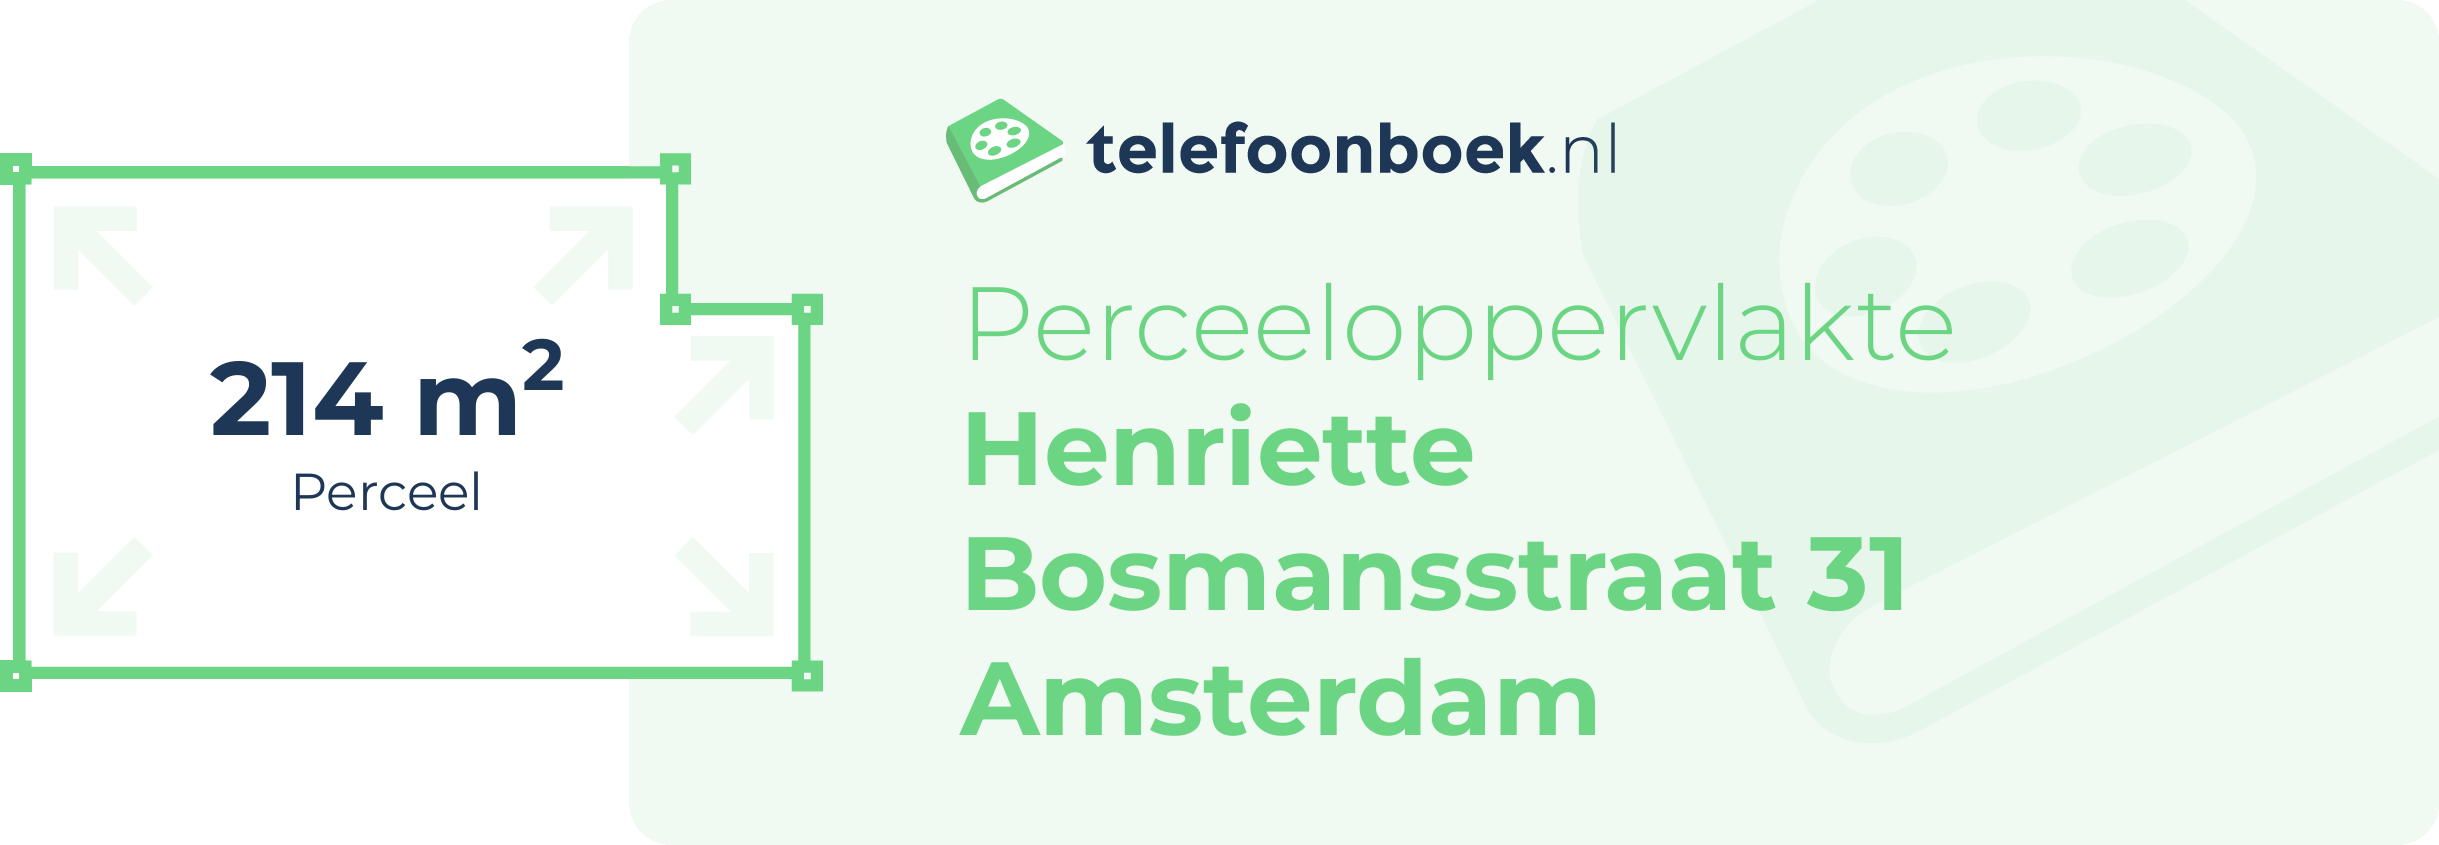 Perceeloppervlakte Henriette Bosmansstraat 31 Amsterdam